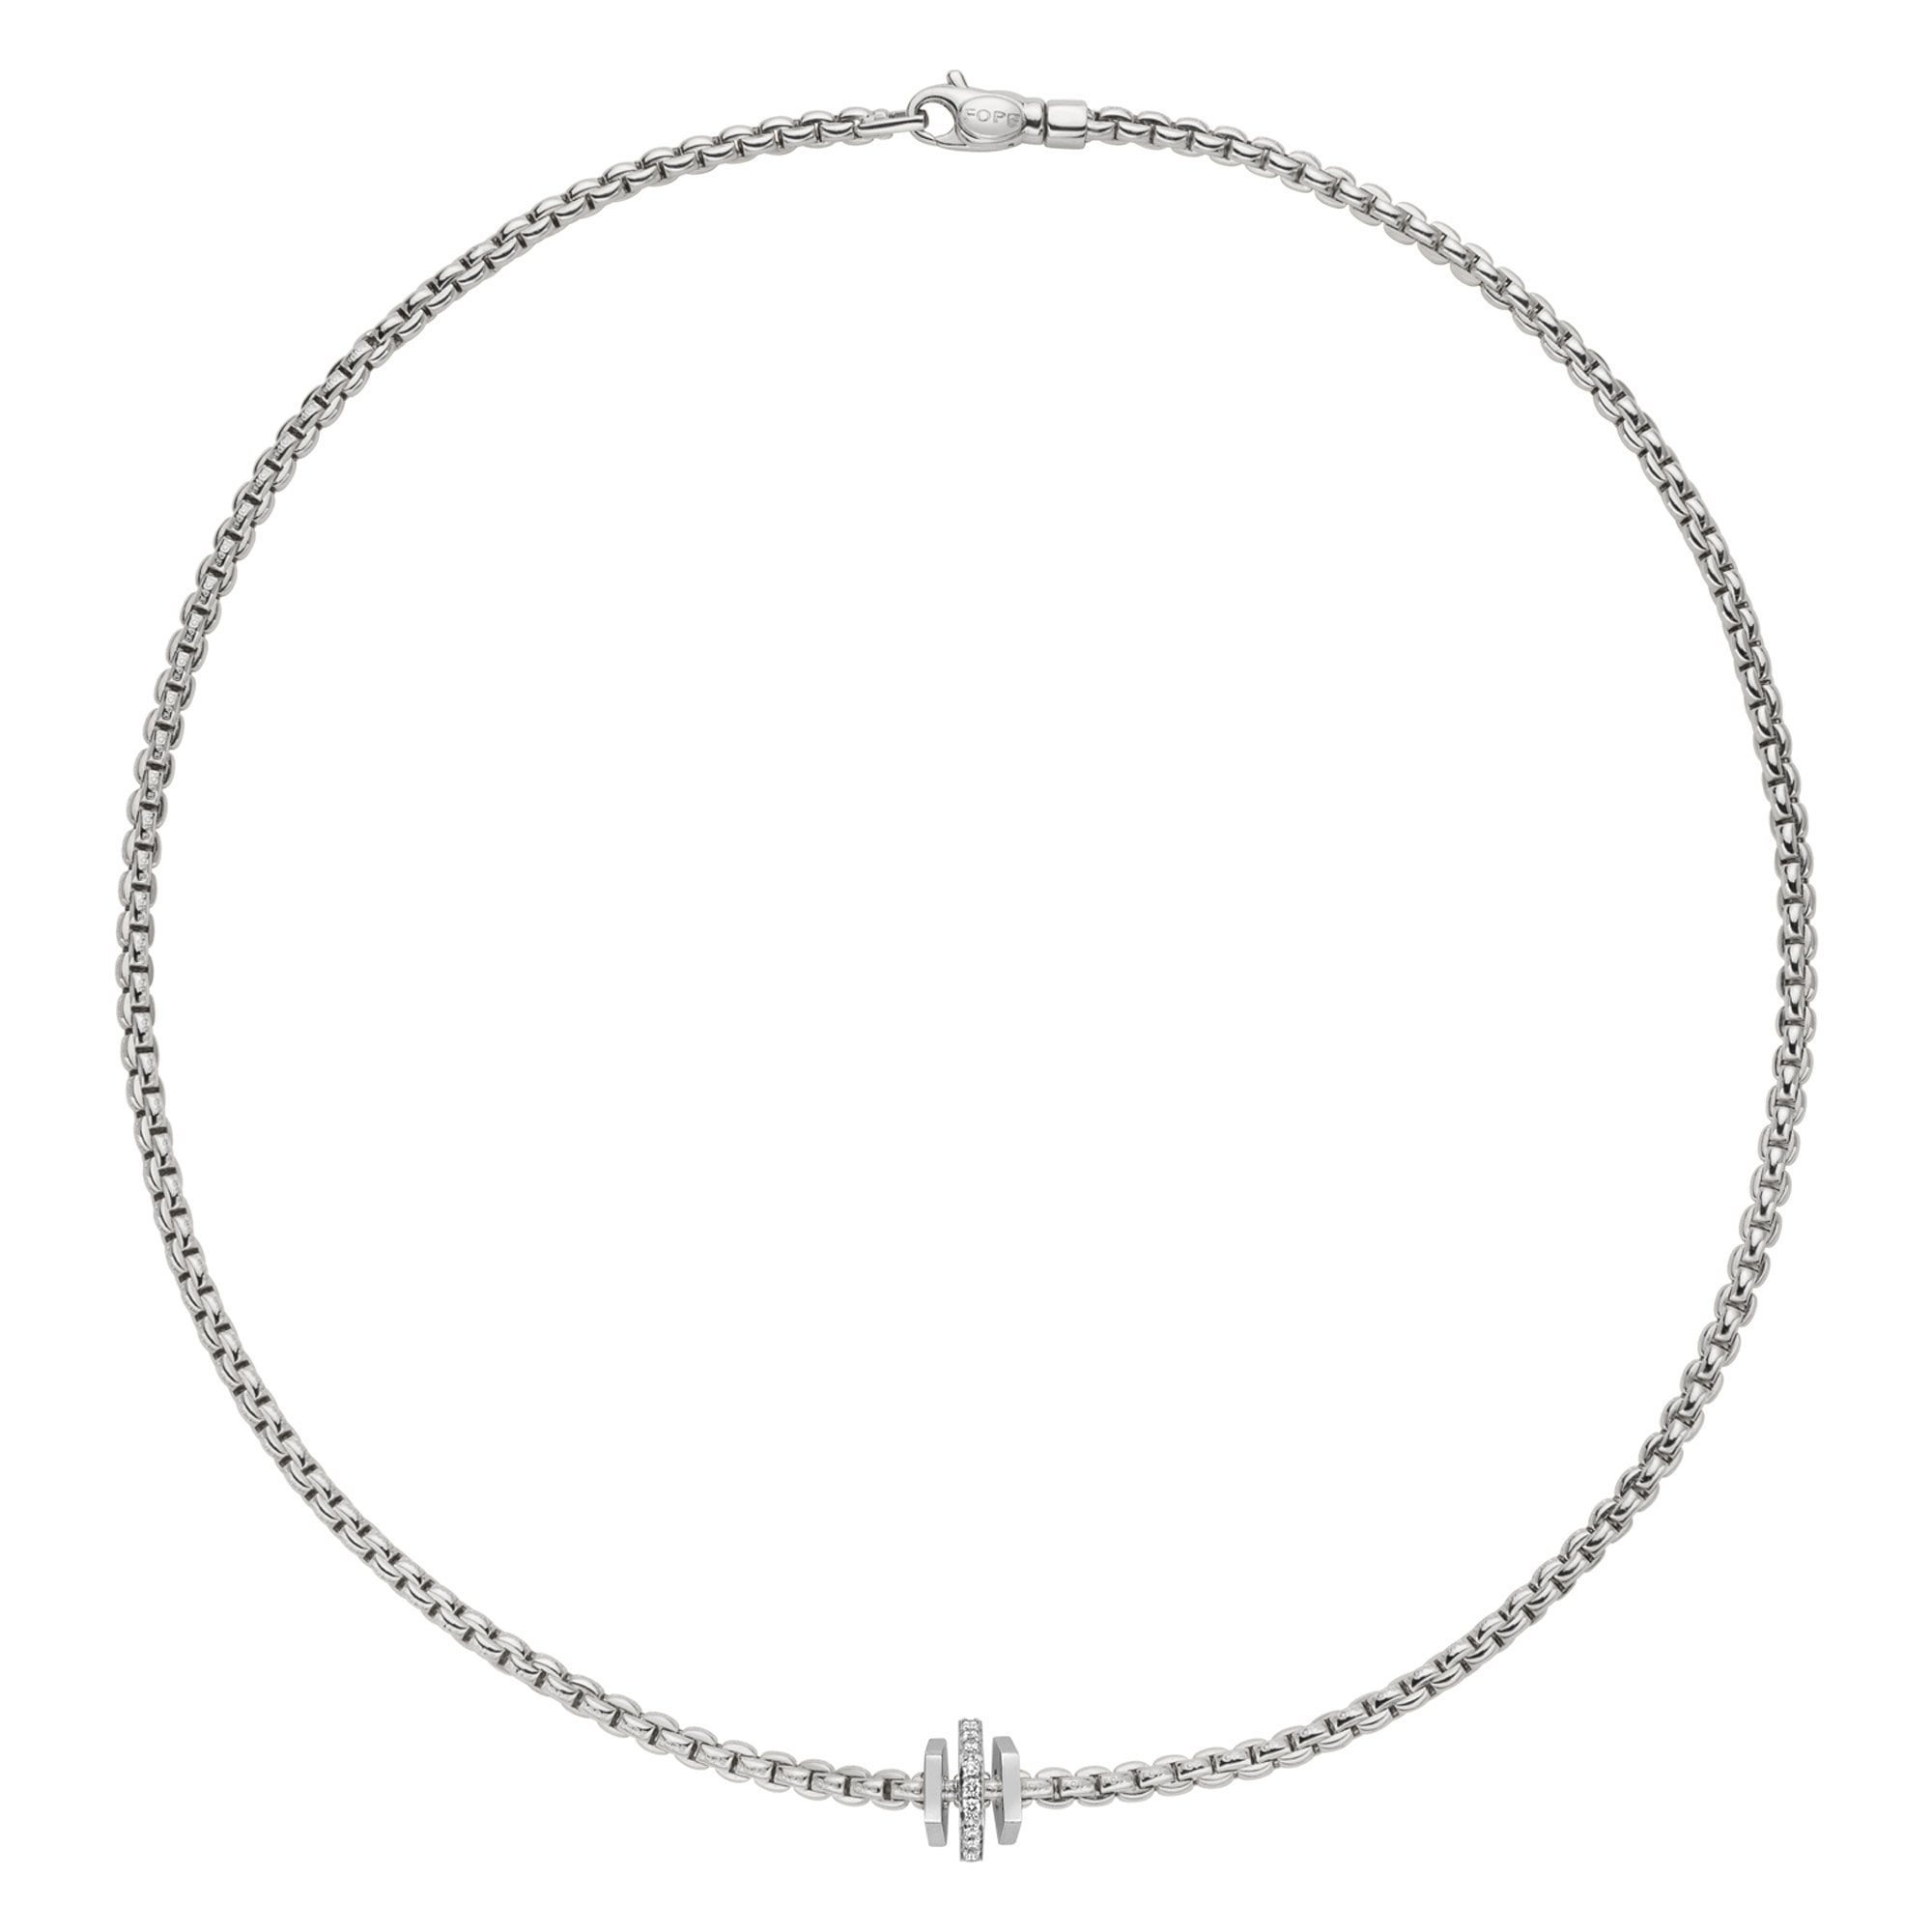 Eka 18ct White Gold Necklace With Diamond Set & Polished Rondels